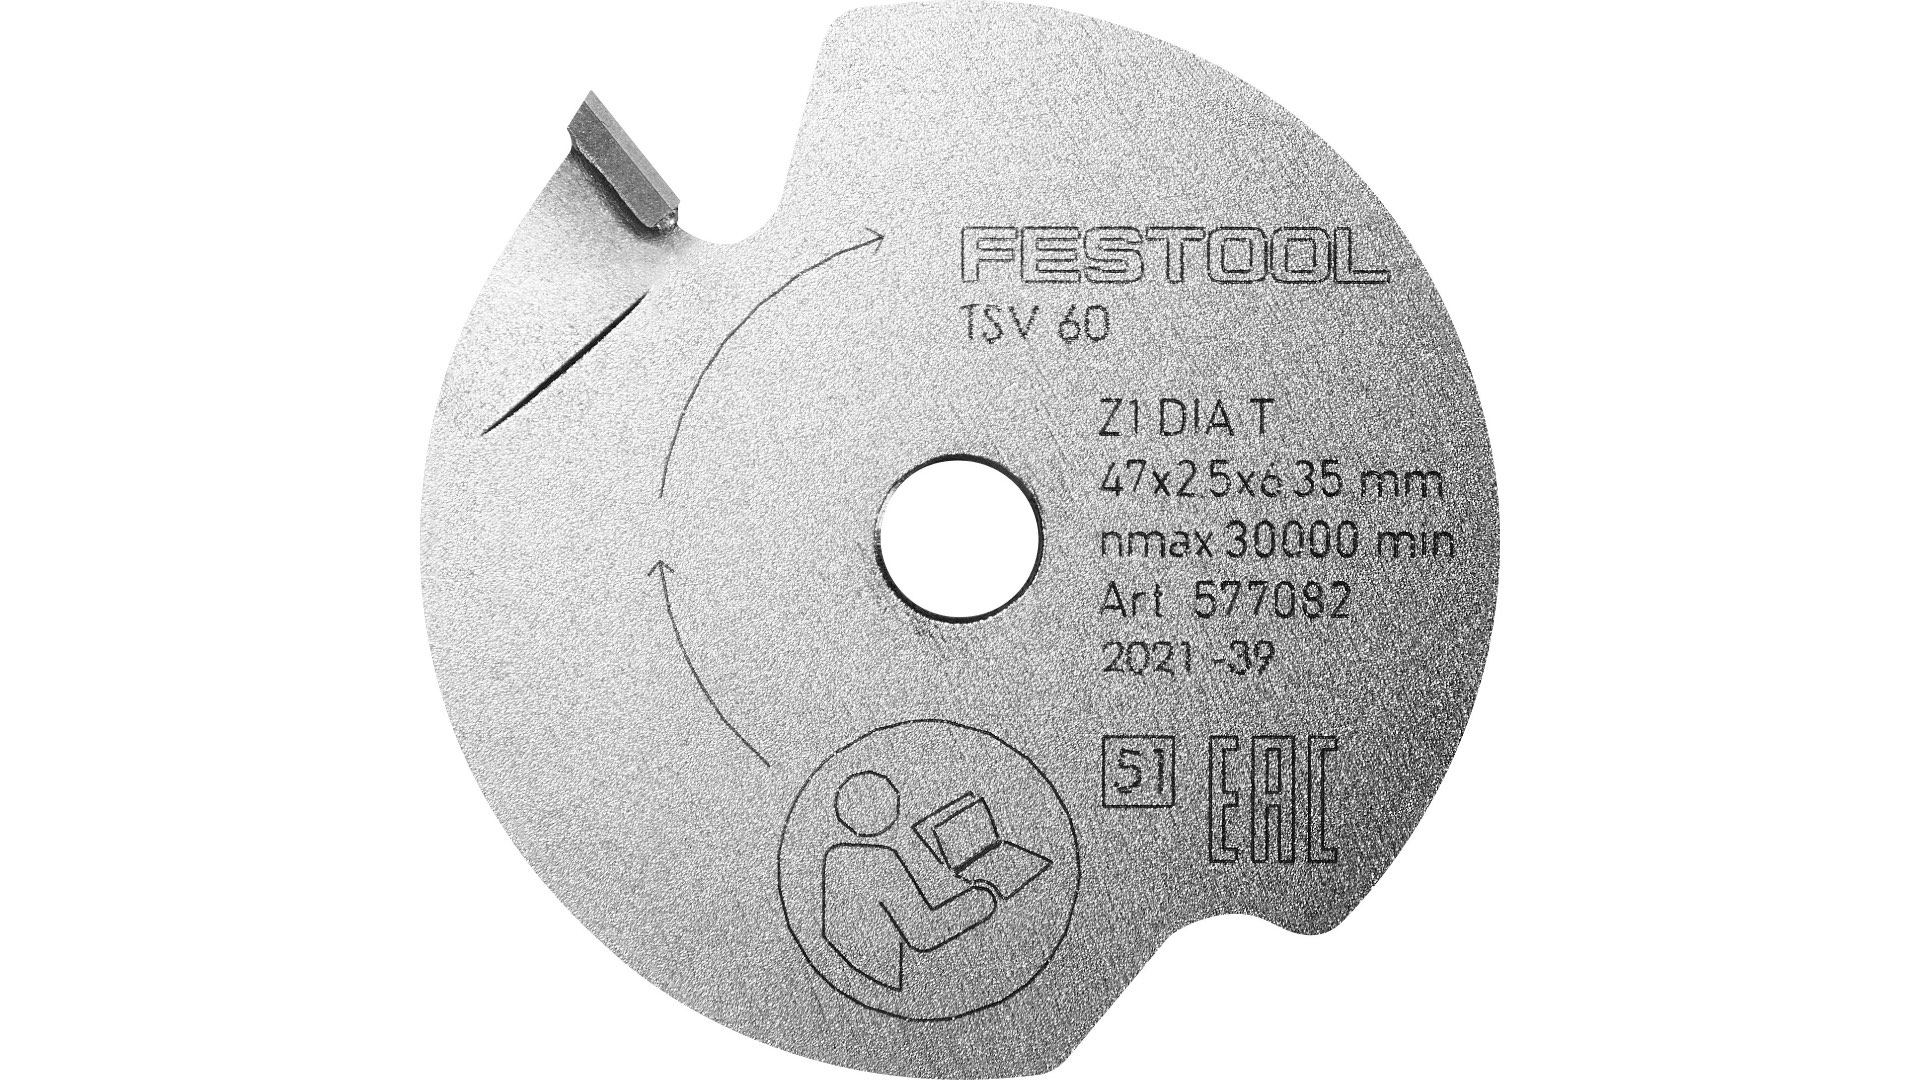 Пильный диск подрезной Festool DIA 47x2,5x6,35 T1 577082 подрезной конический пильный диск valtze